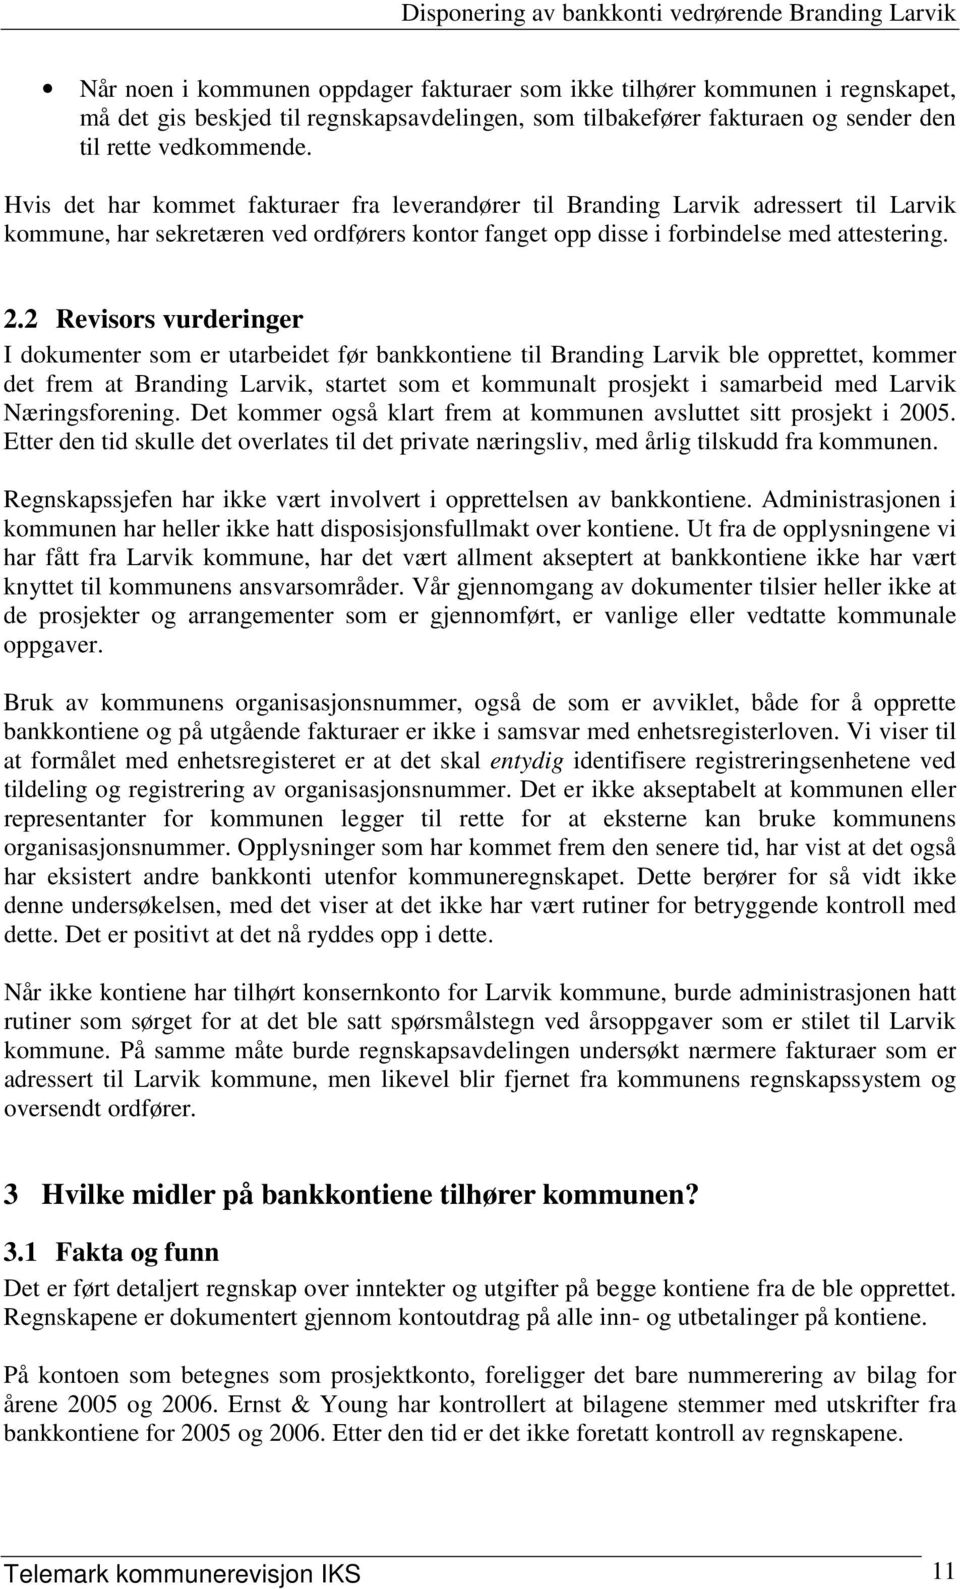 2 Revisors vurderinger I dokumenter som er utarbeidet før bankkontiene til Branding Larvik ble opprettet, kommer det frem at Branding Larvik, startet som et kommunalt prosjekt i samarbeid med Larvik